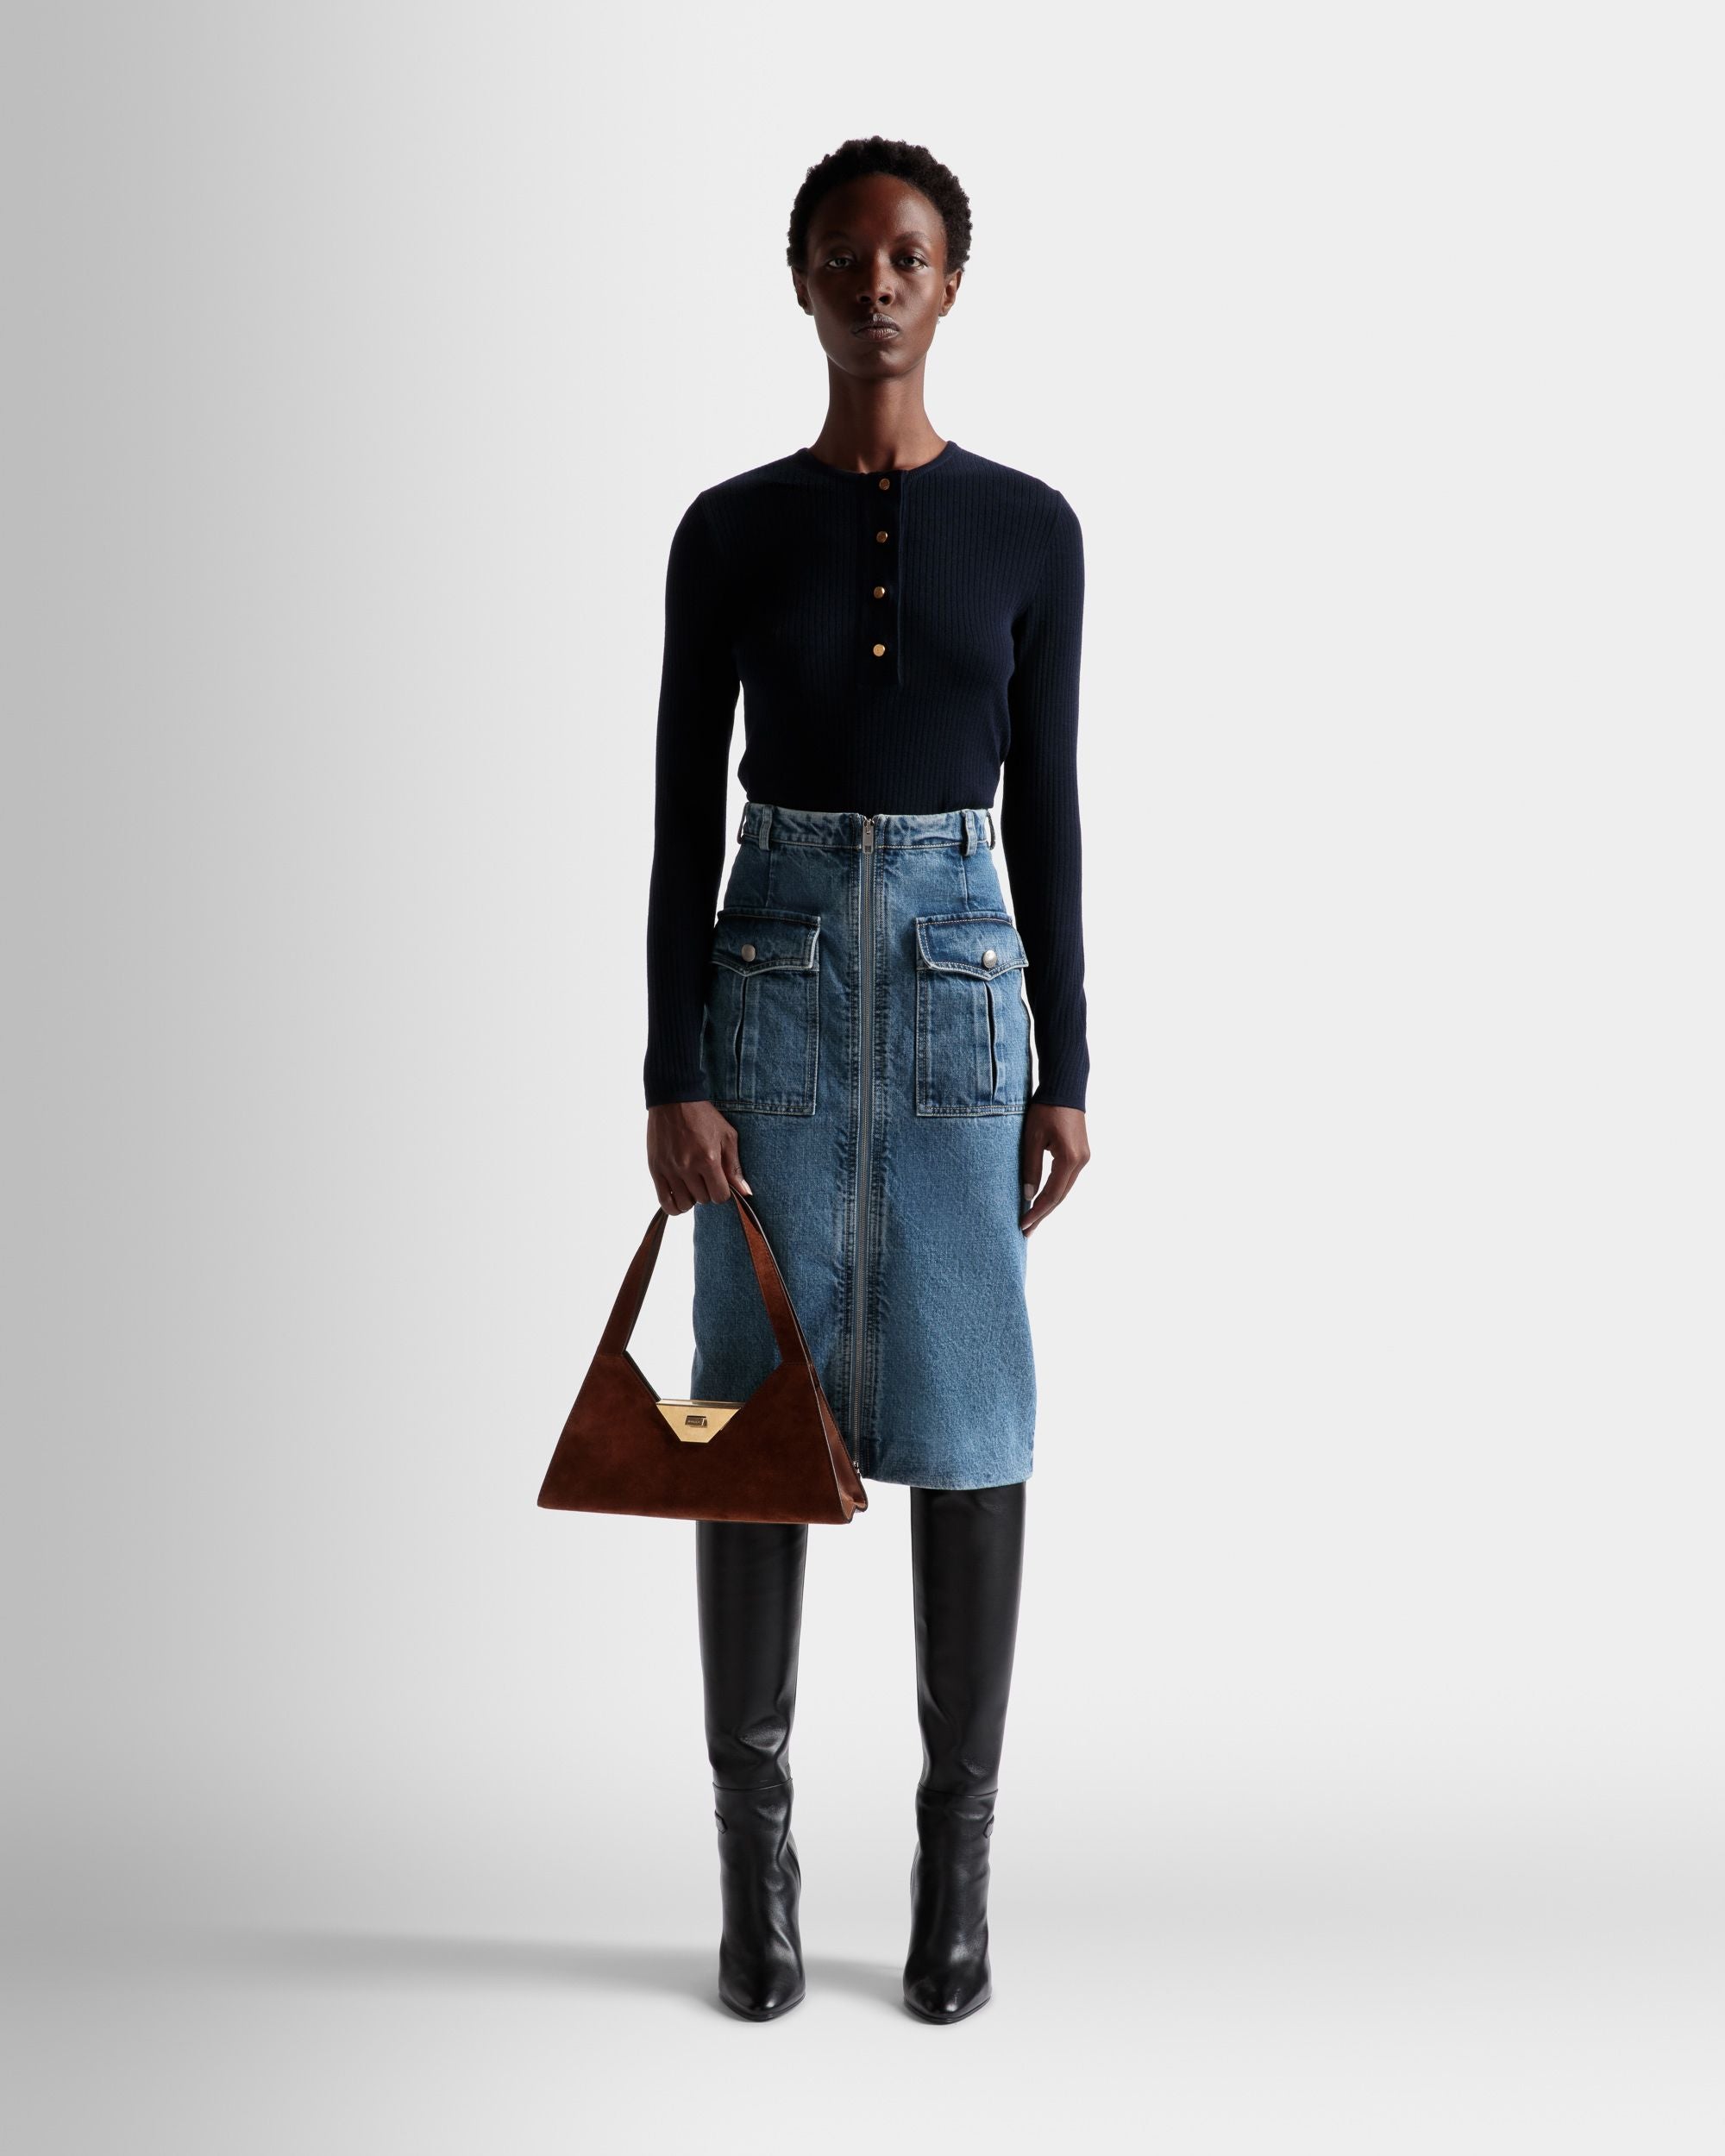 Trilliant Small Shoulder Bag | Women's Shoulder Bag | Brown Suede Leather | Bally | On Model Front